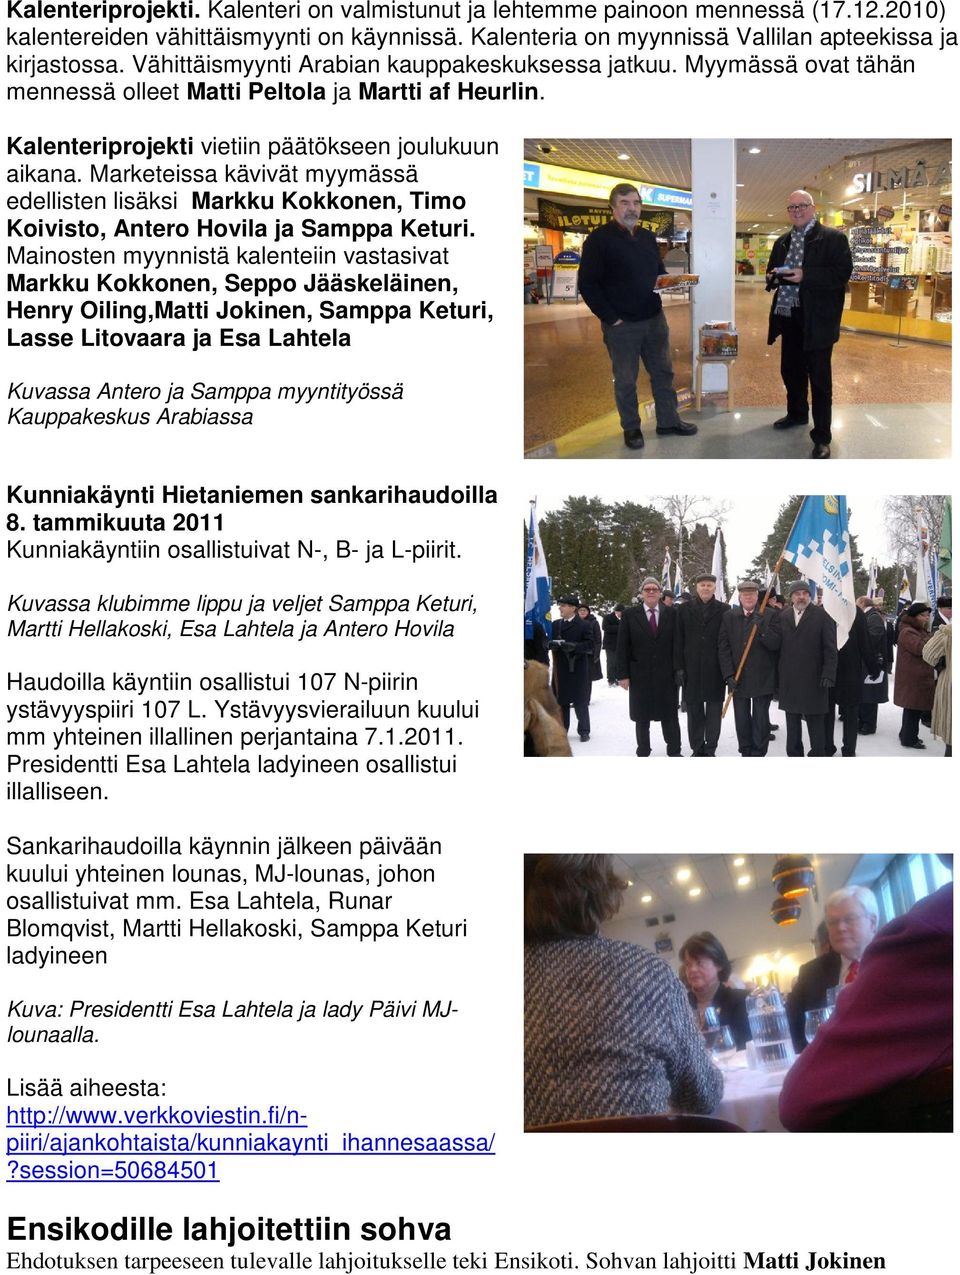 Marketeissa kävivät myymässä edellisten lisäksi Markku Kokkonen, Timo Koivisto, Antero Hovila ja Samppa Keturi.